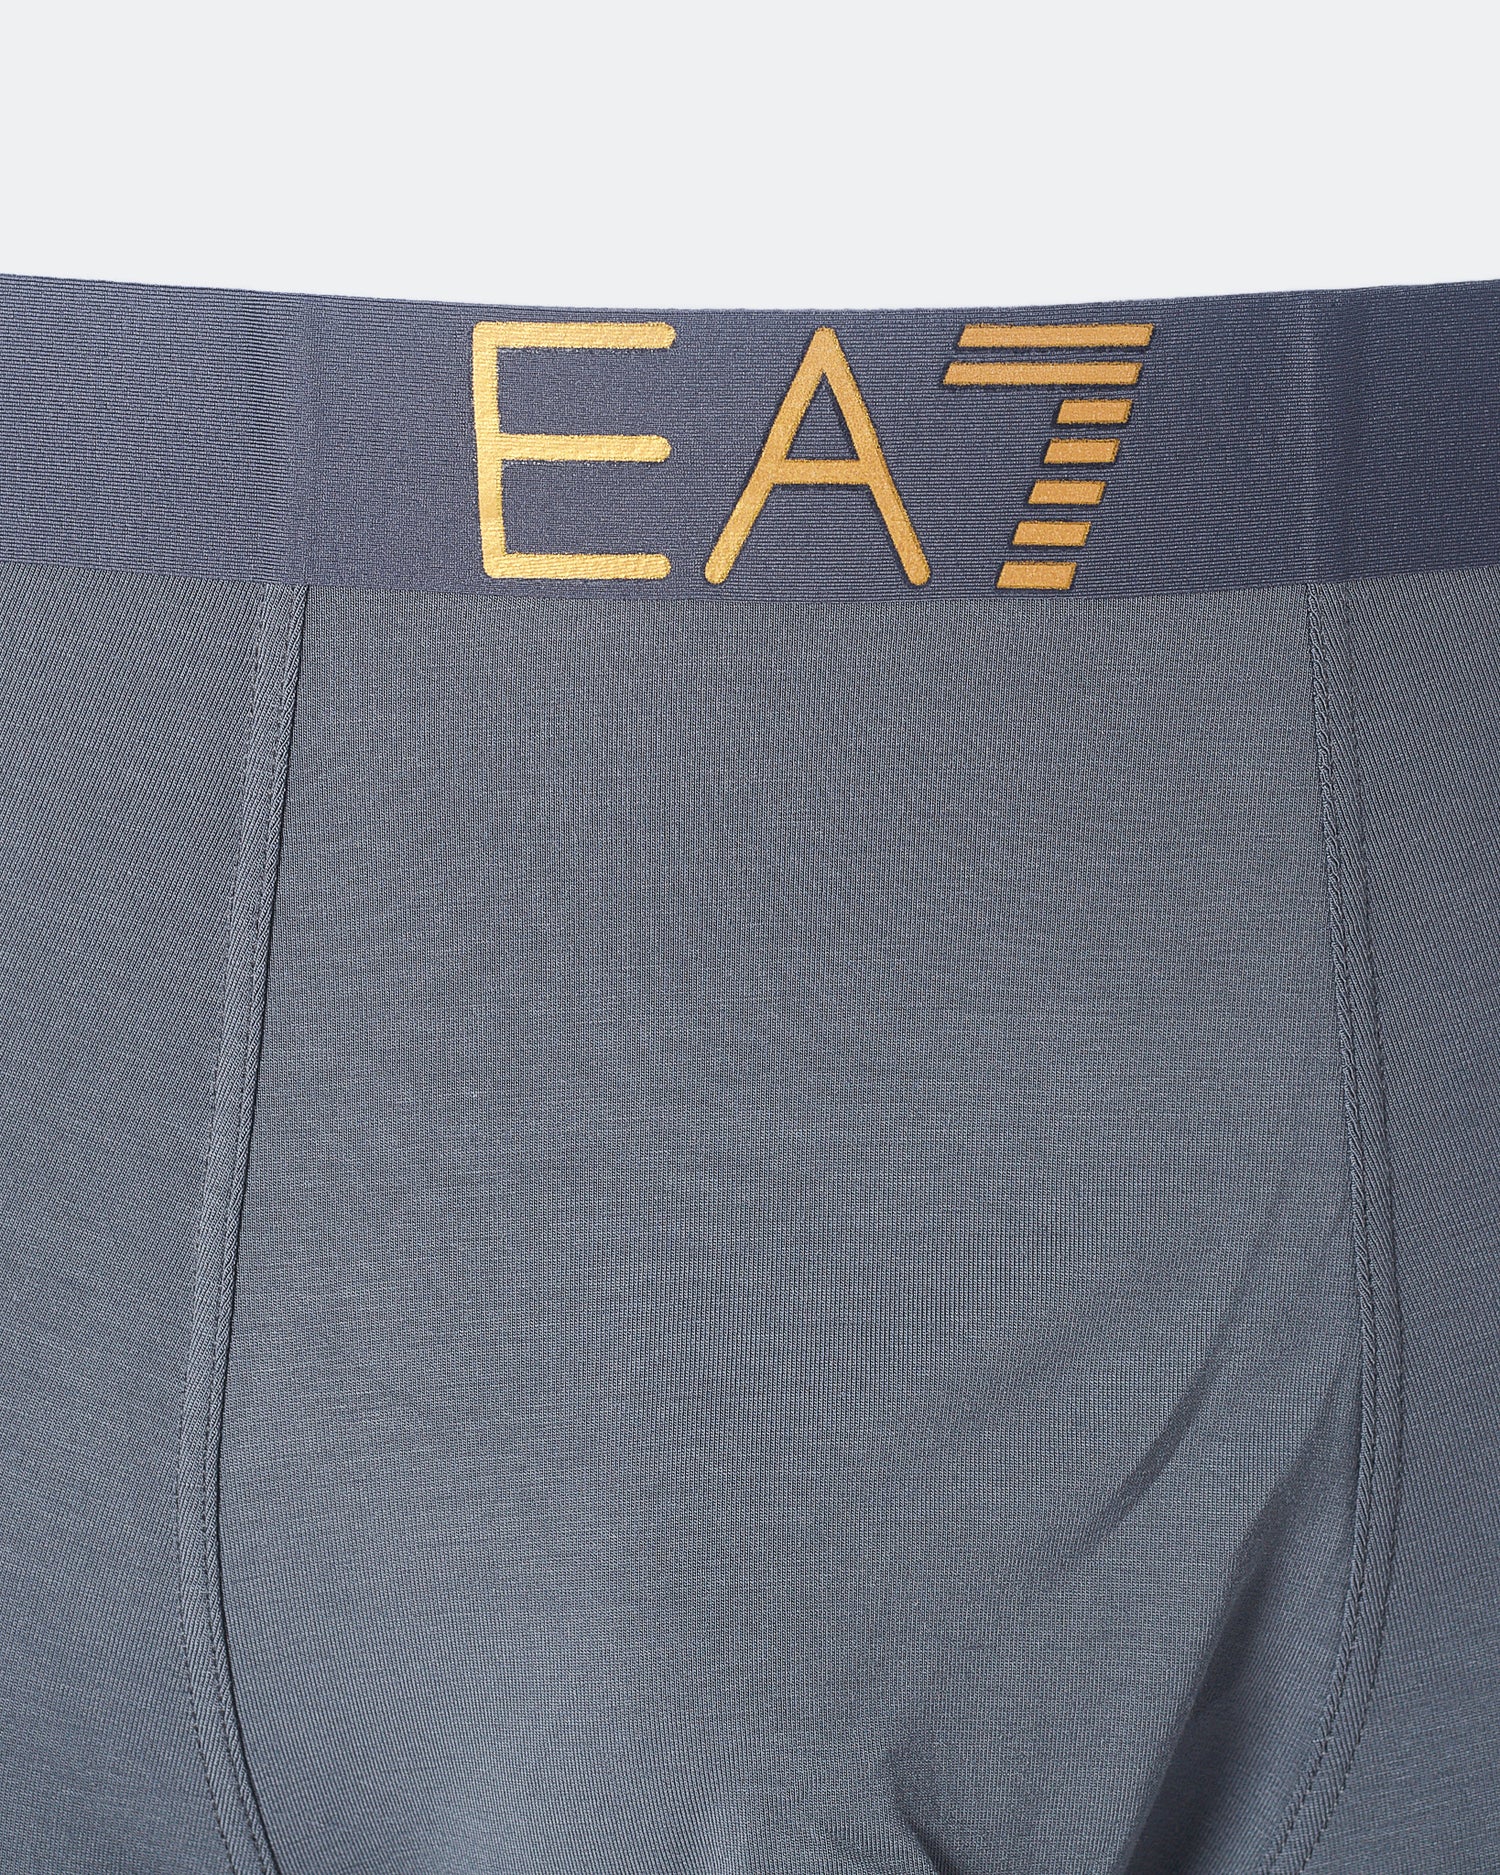 ARM EA7 Logo Printed Men Grey Underwear 7.50